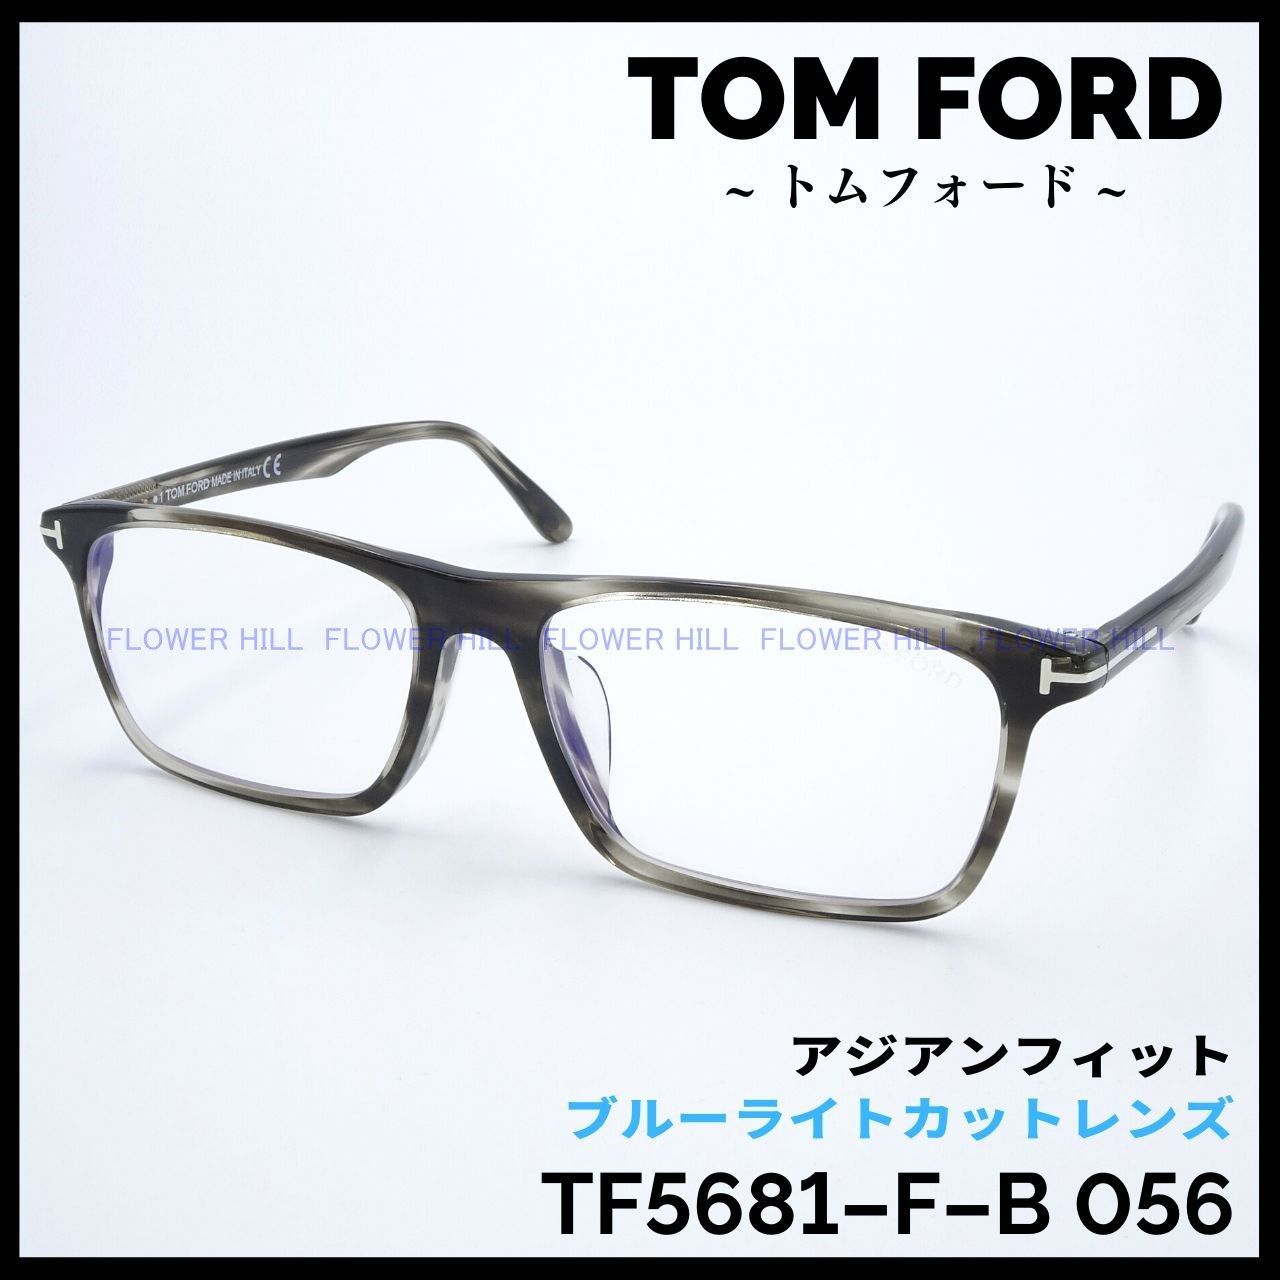 TOM FORD トムフォード メガネ TF5681-F-B 056 スクエア アジアン